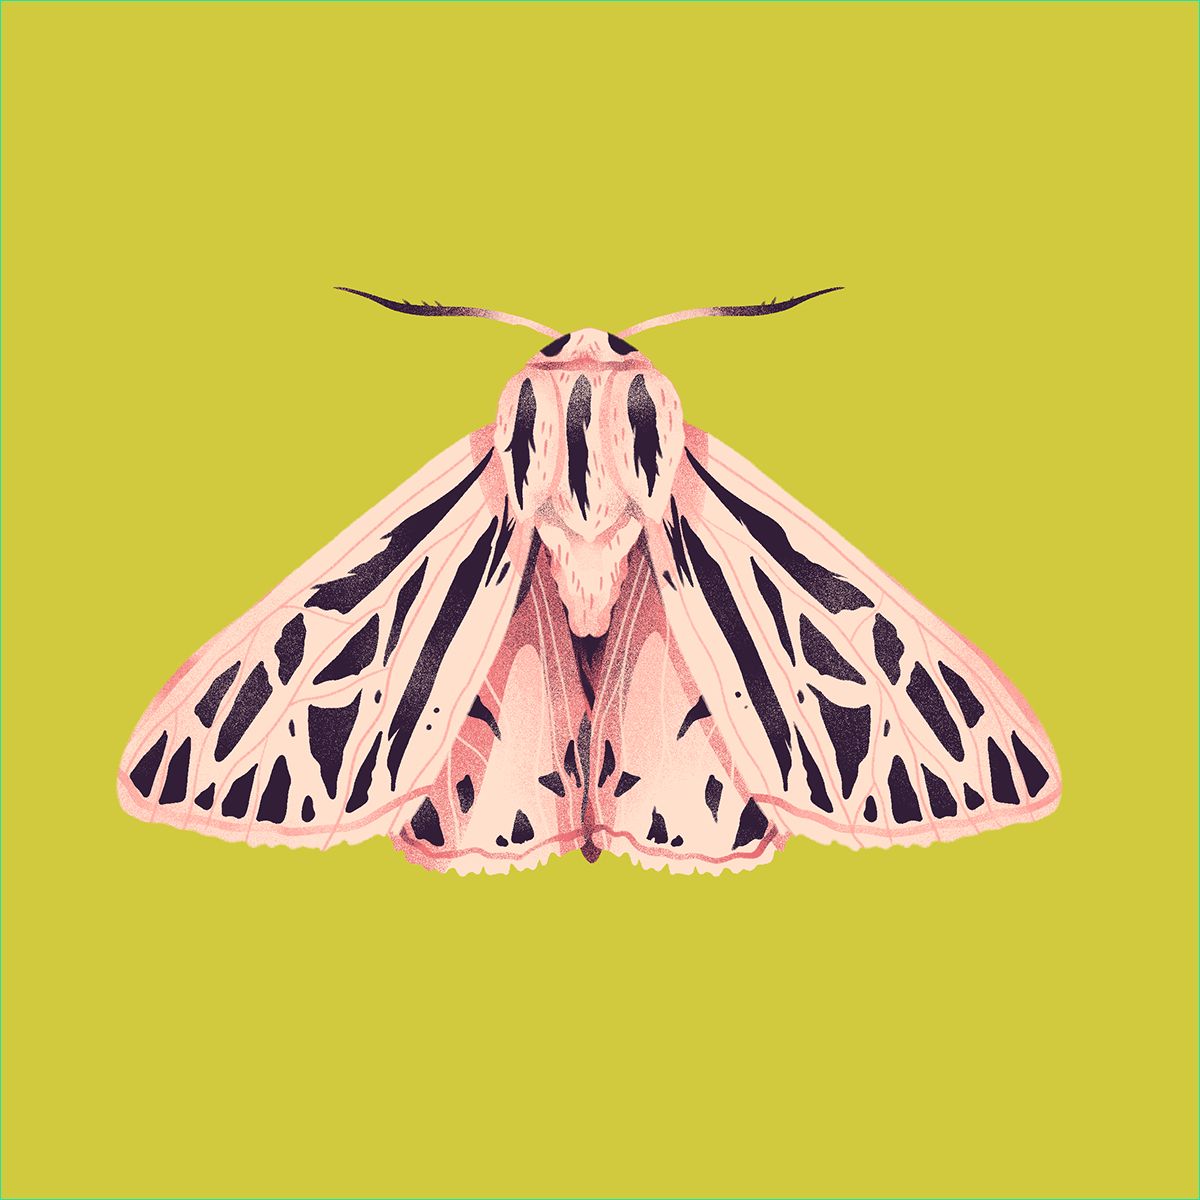 les dessins de papillons de nuit colores de jelena hallmann haeschke